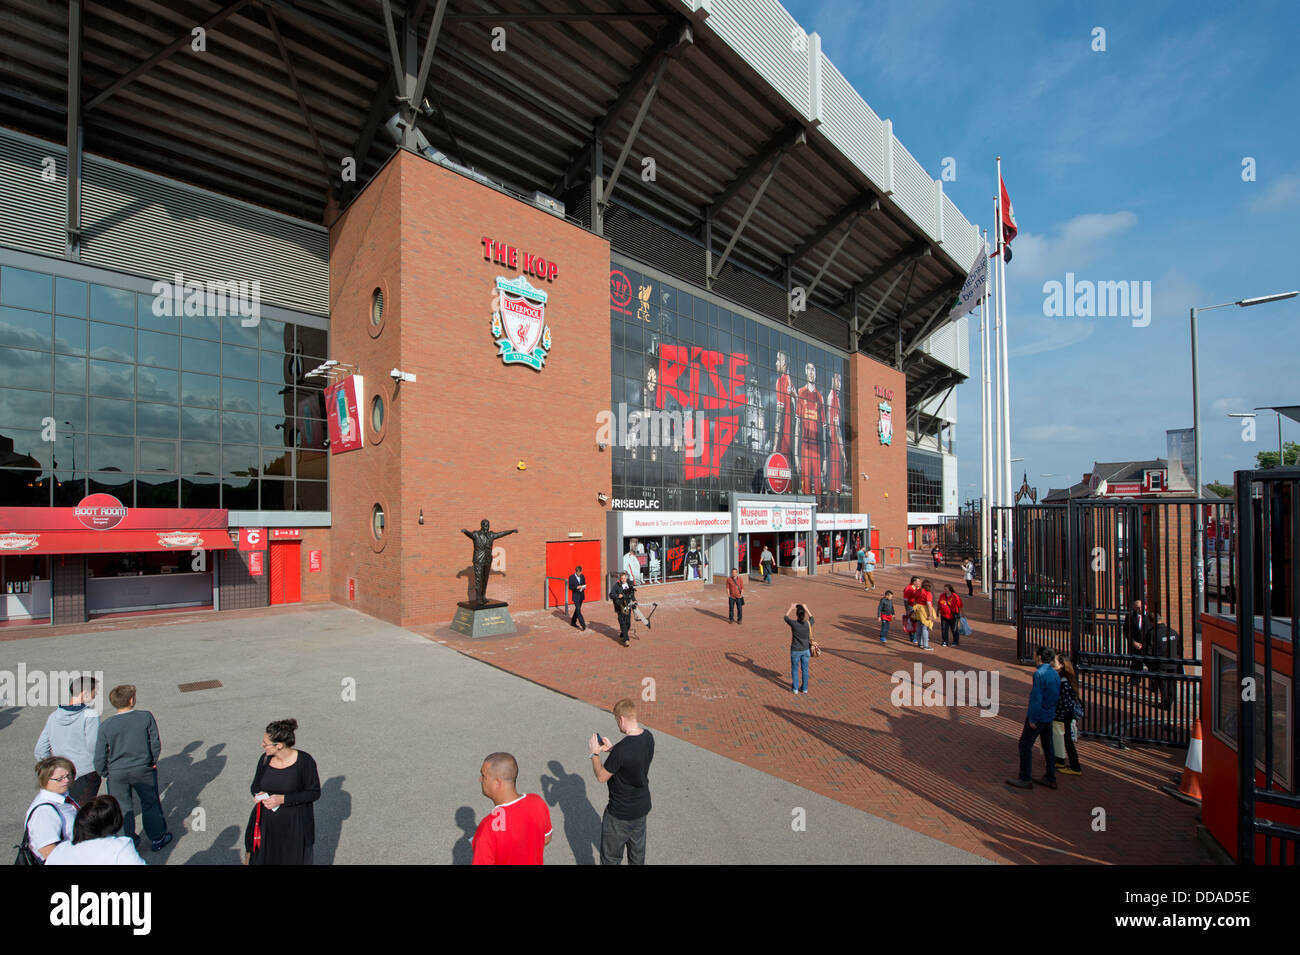 Un amplio ángulo de disparo de la Spion Kop final de Anfield Stadium, hogar del club de fútbol Liverpool (uso Editorial solamente). Foto de stock